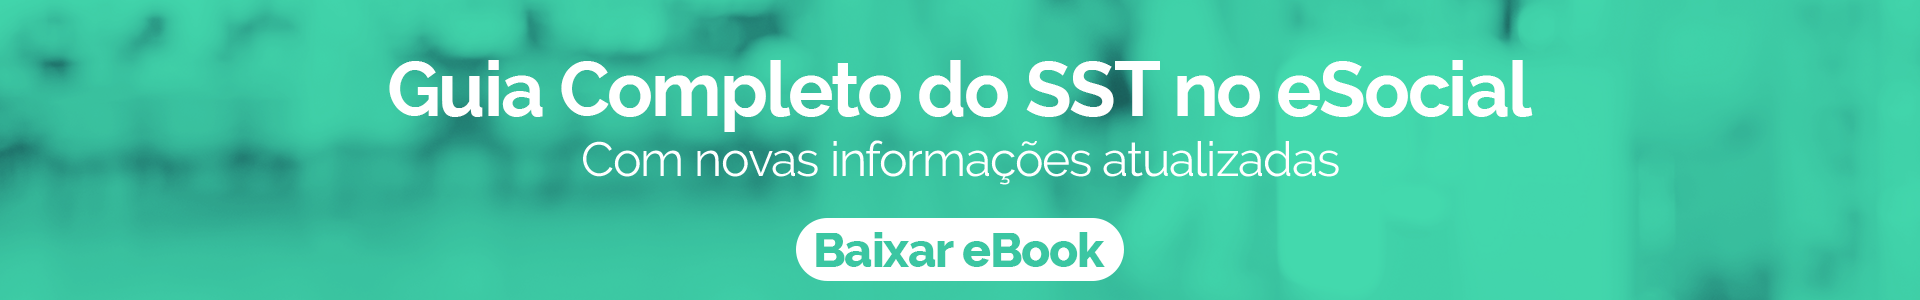 Banner pra eBook "Guia Completo do SST no eSocial"